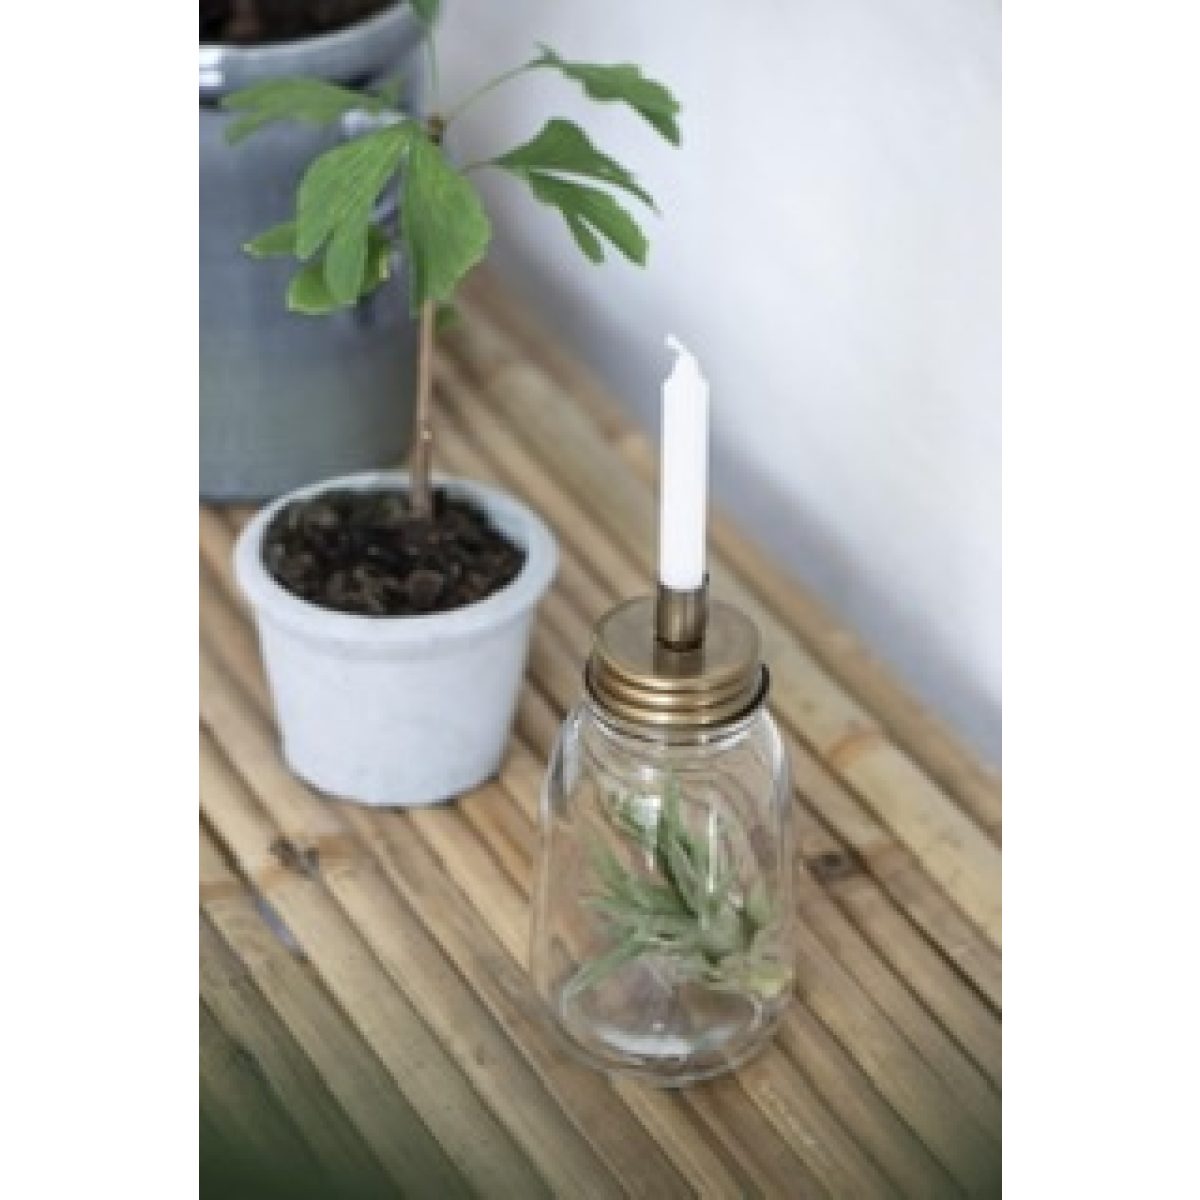 Kerzenhalter auf einer Glasvase und eine Pflanze in einem grauen Topf